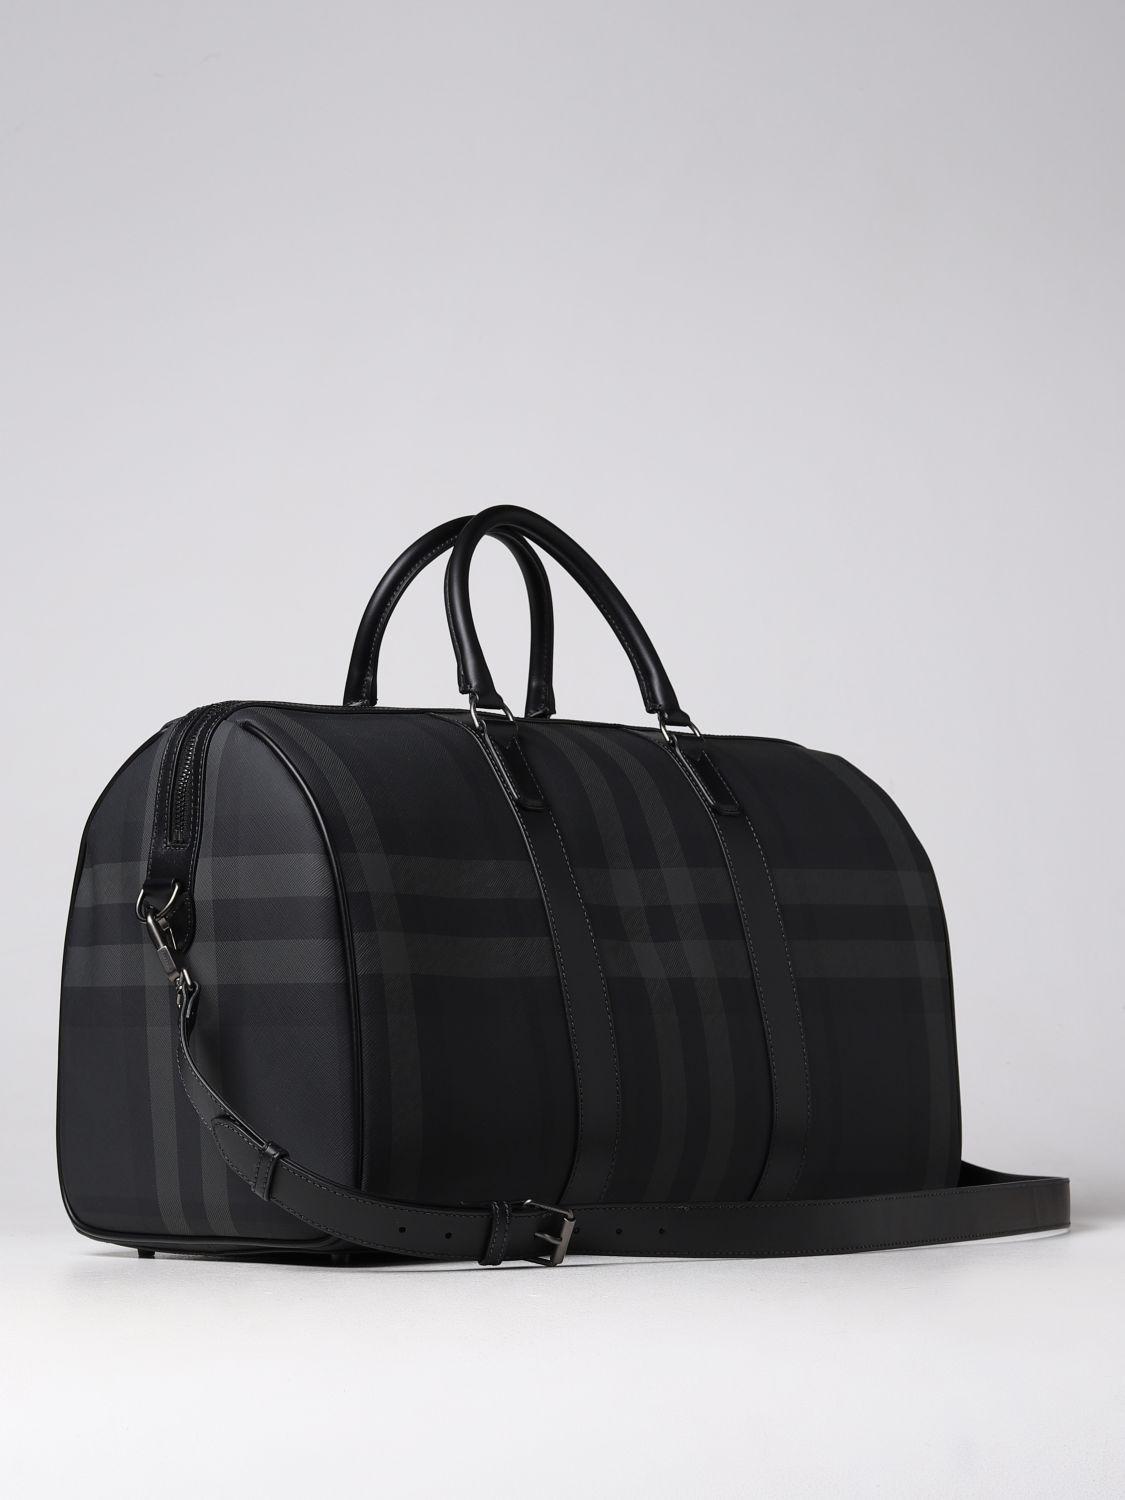 Burberry Travel Bag in Black for Men